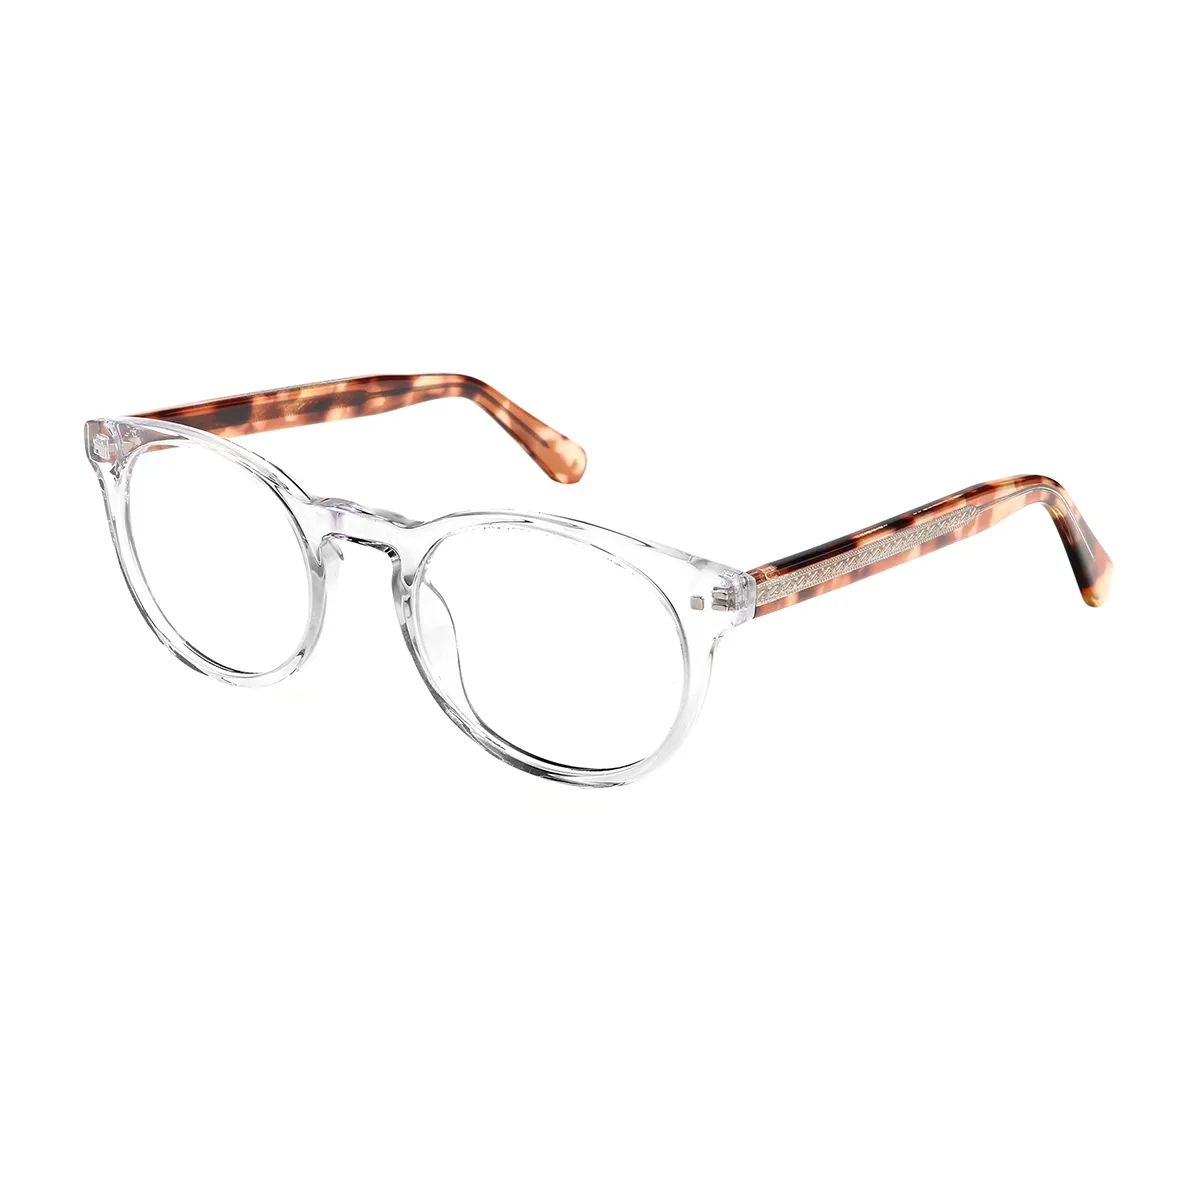 Stephens - Round Translucent Glasses for Men & Women